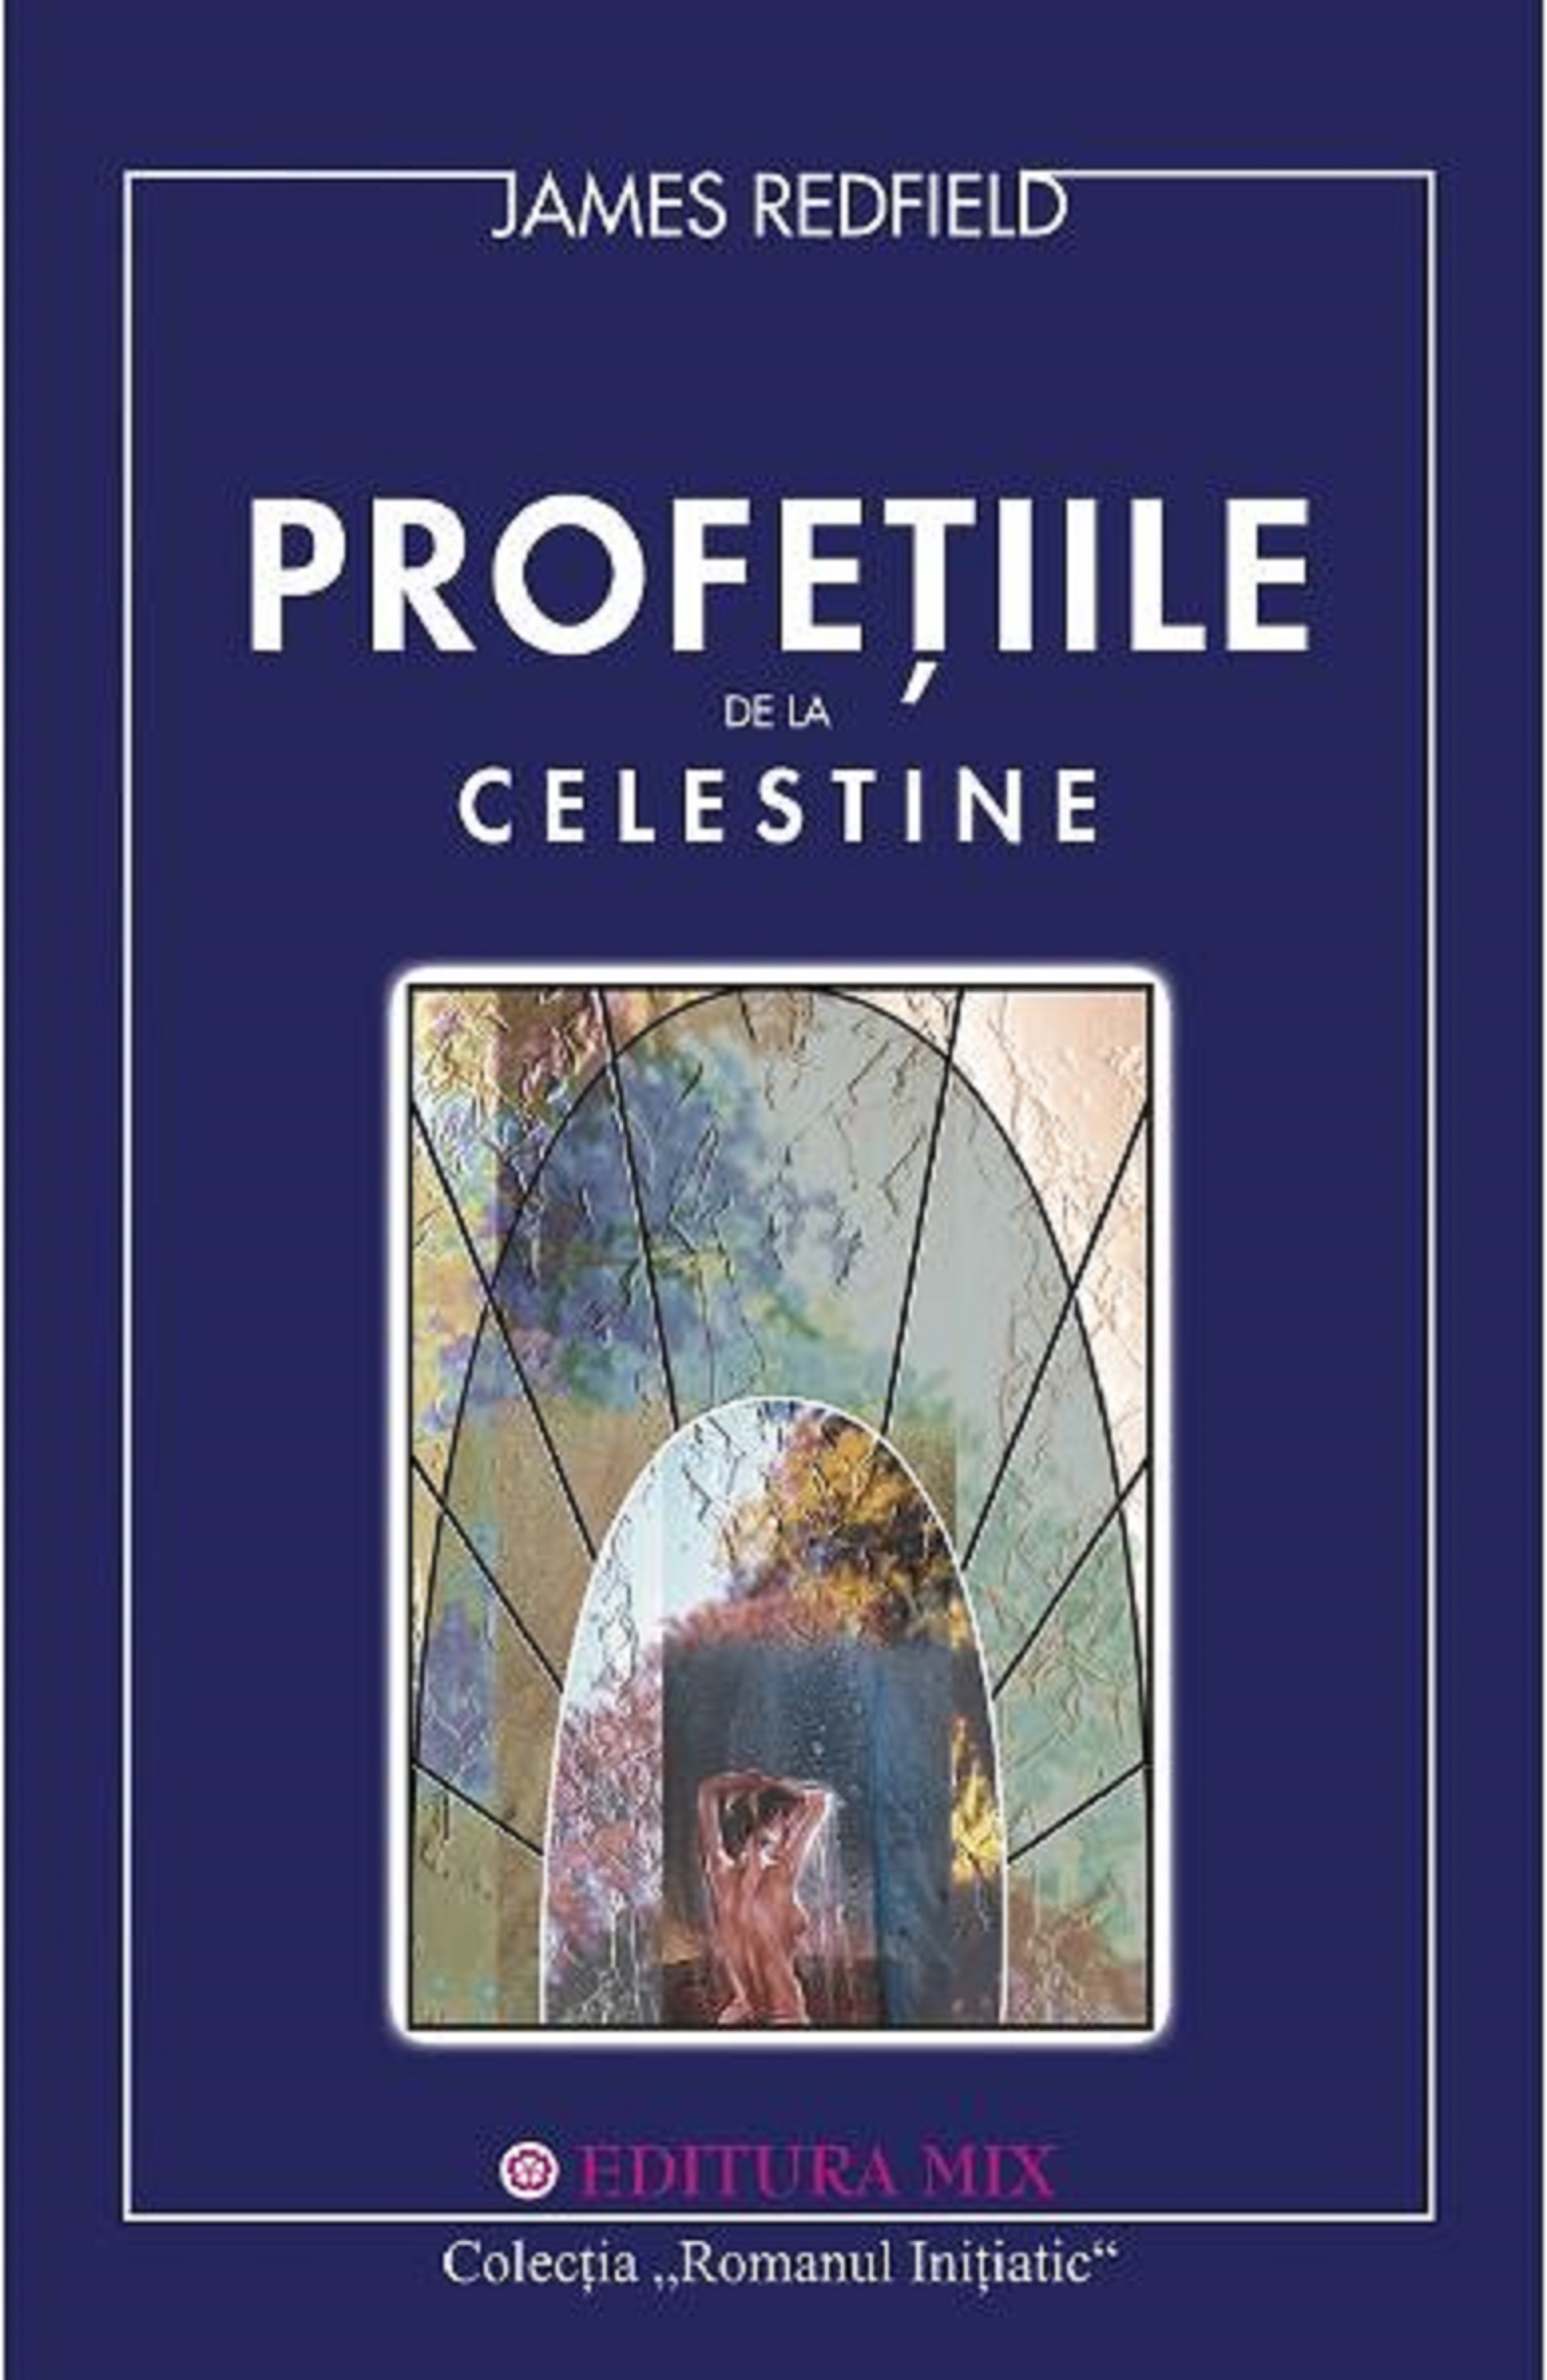 PDF Profetiile de la Celestine | James Redfield carturesti.ro Carte